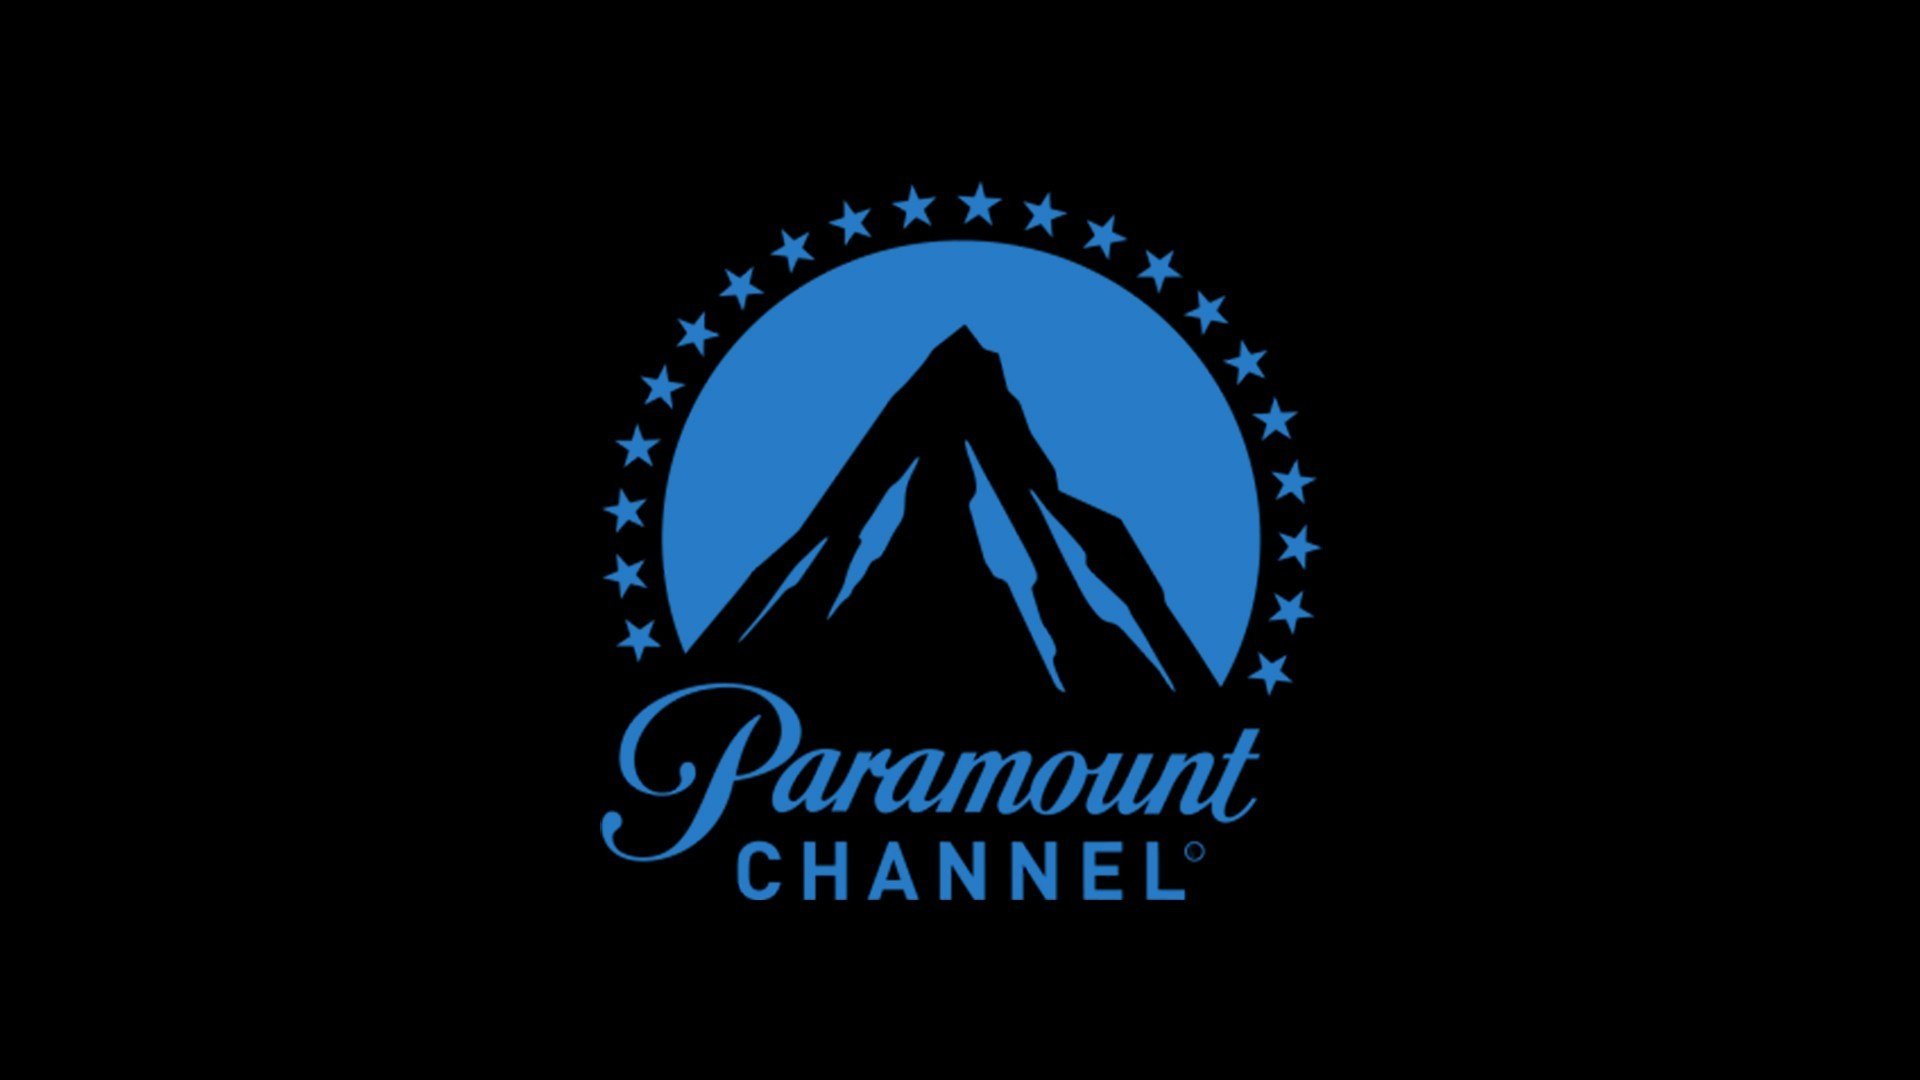 Парамаунт заставка. Киностудия Парамаунт Пикчерз. Paramount логотип. Канал Paramount channel. Логотипы кинокомпаний.